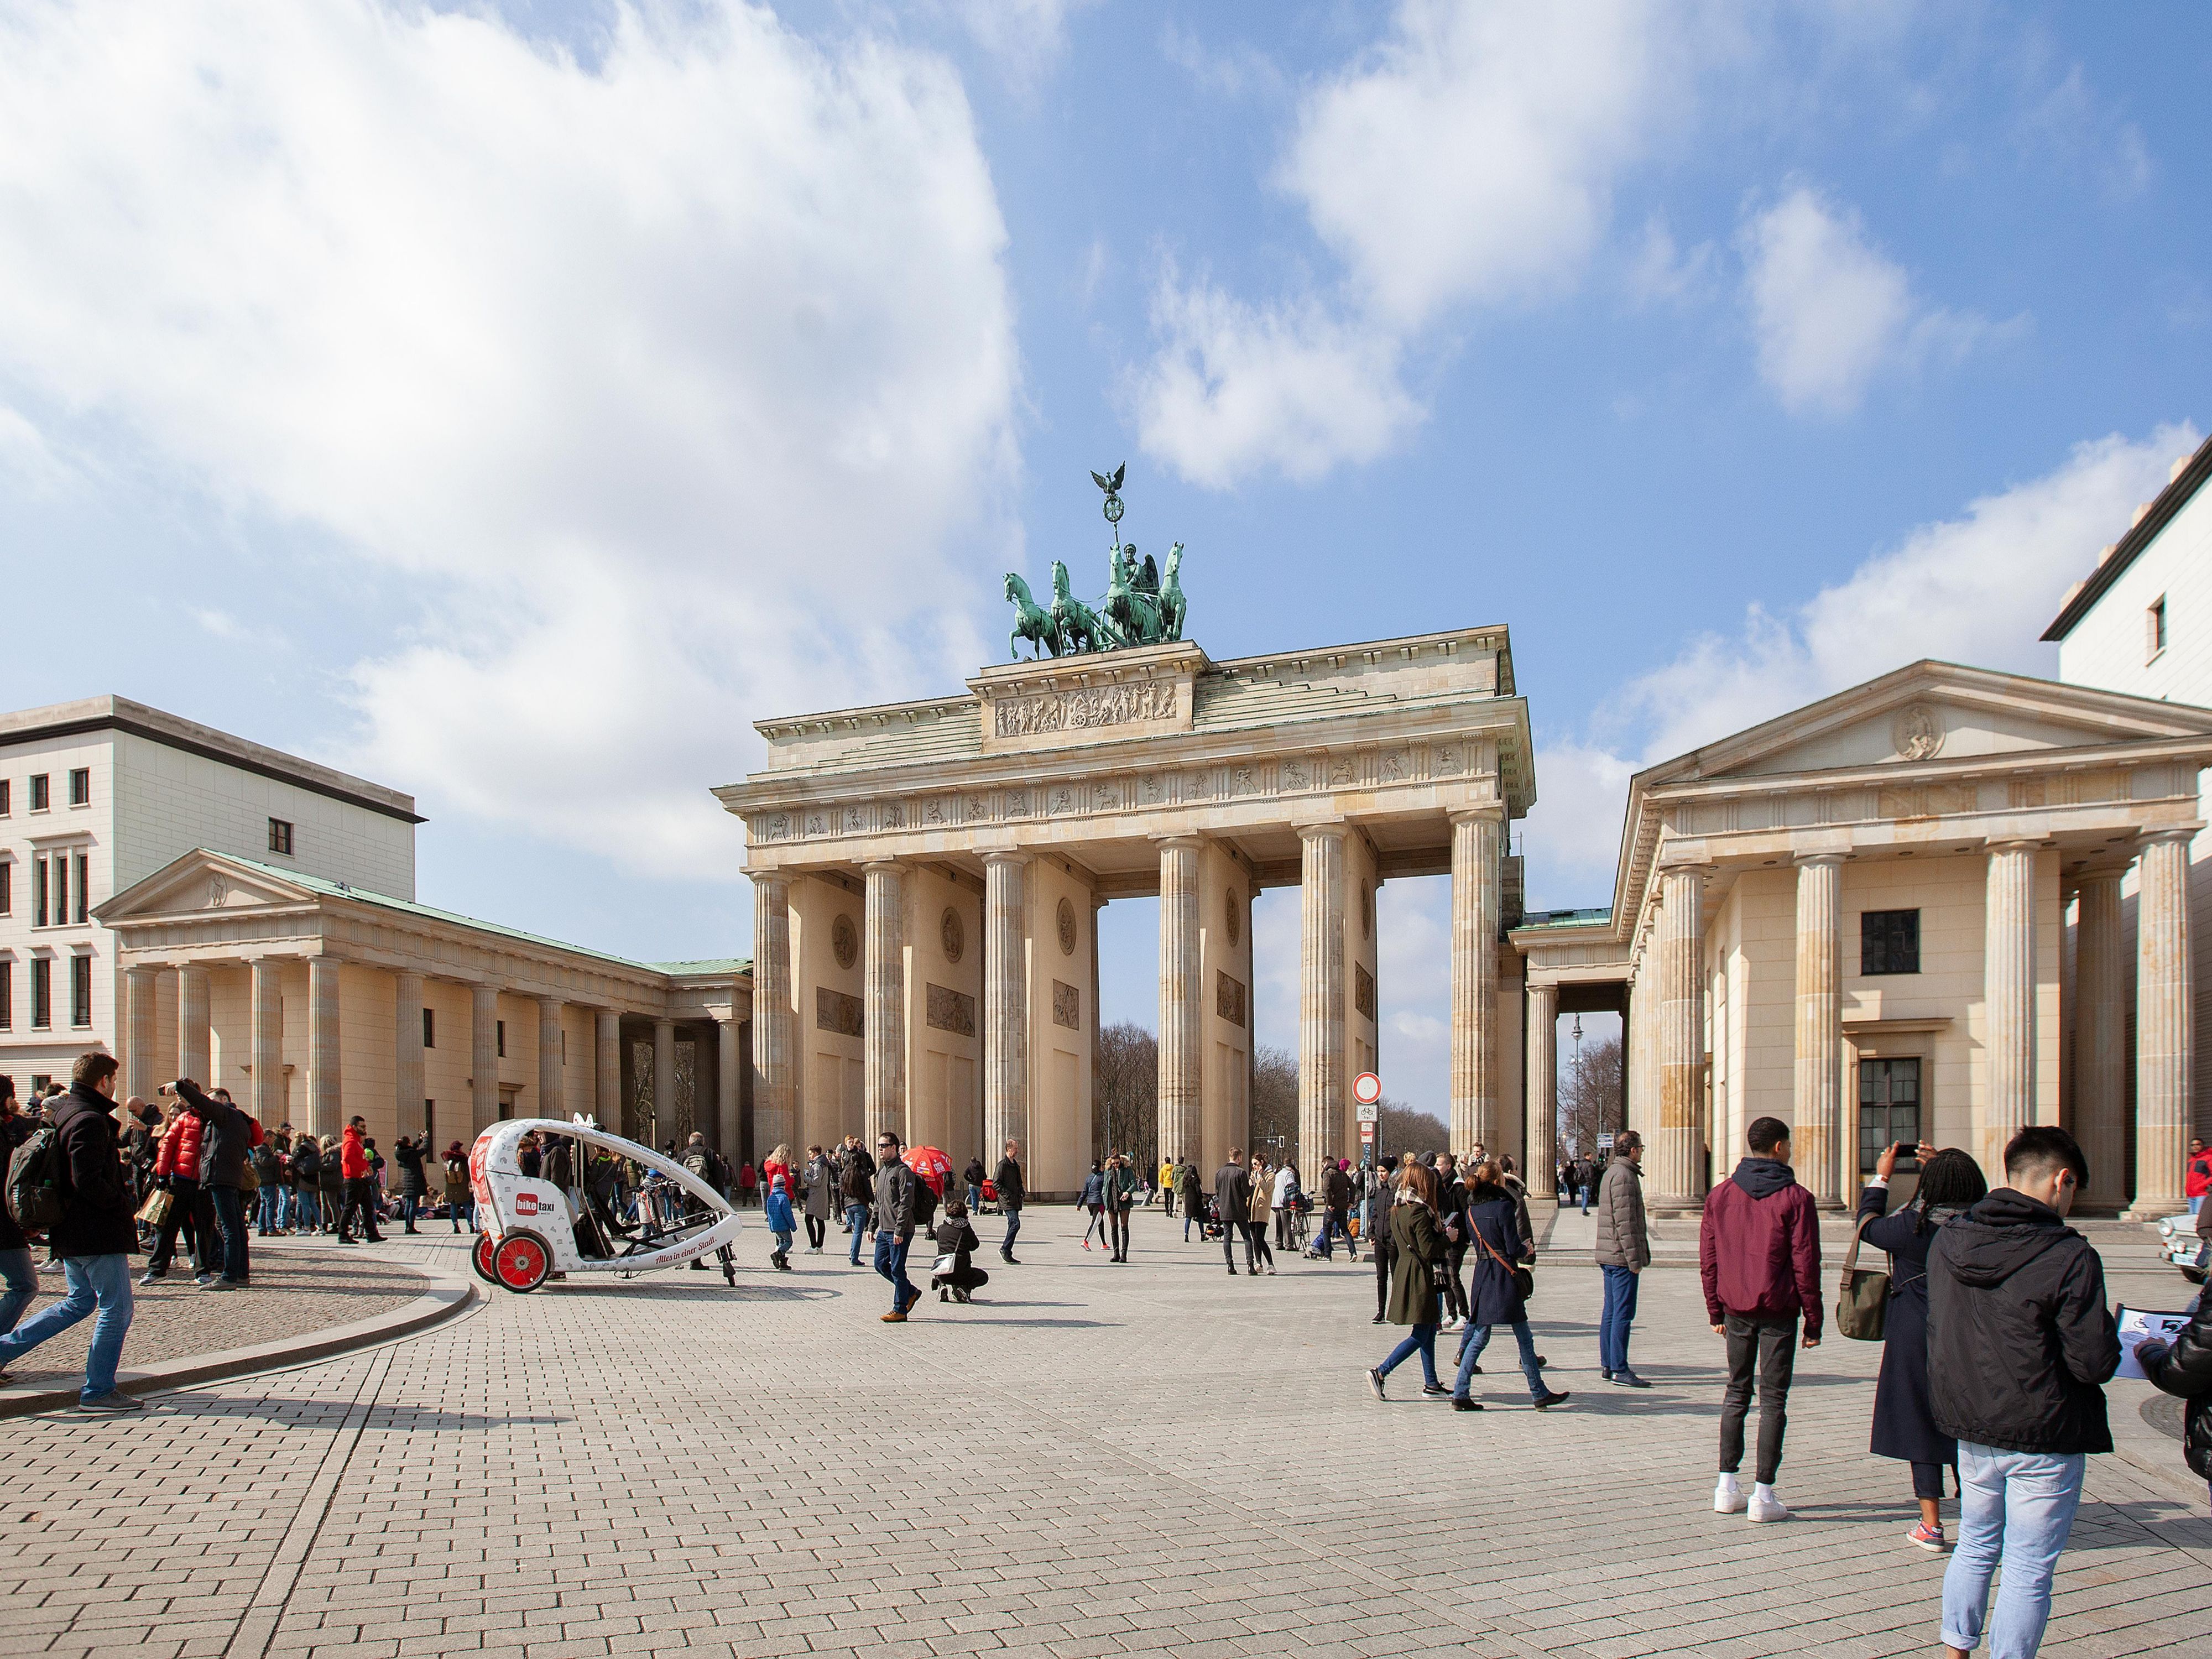 Schlendern Sie zum berühmten Brandenburger Tor